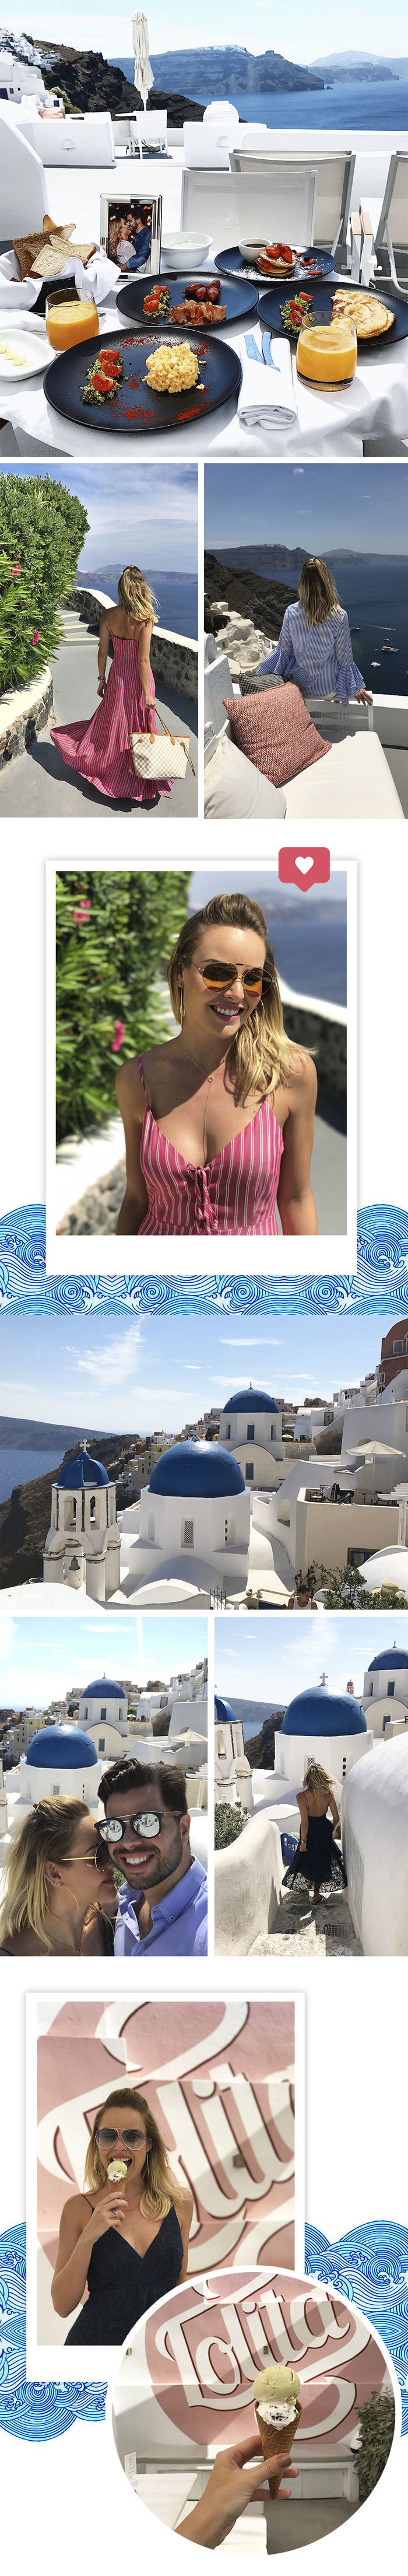 Layla Monteiro noiva pedido de casamento na Grécia viagem dicas Santorini sorvete Lolita igreja ortodoxa teto azul